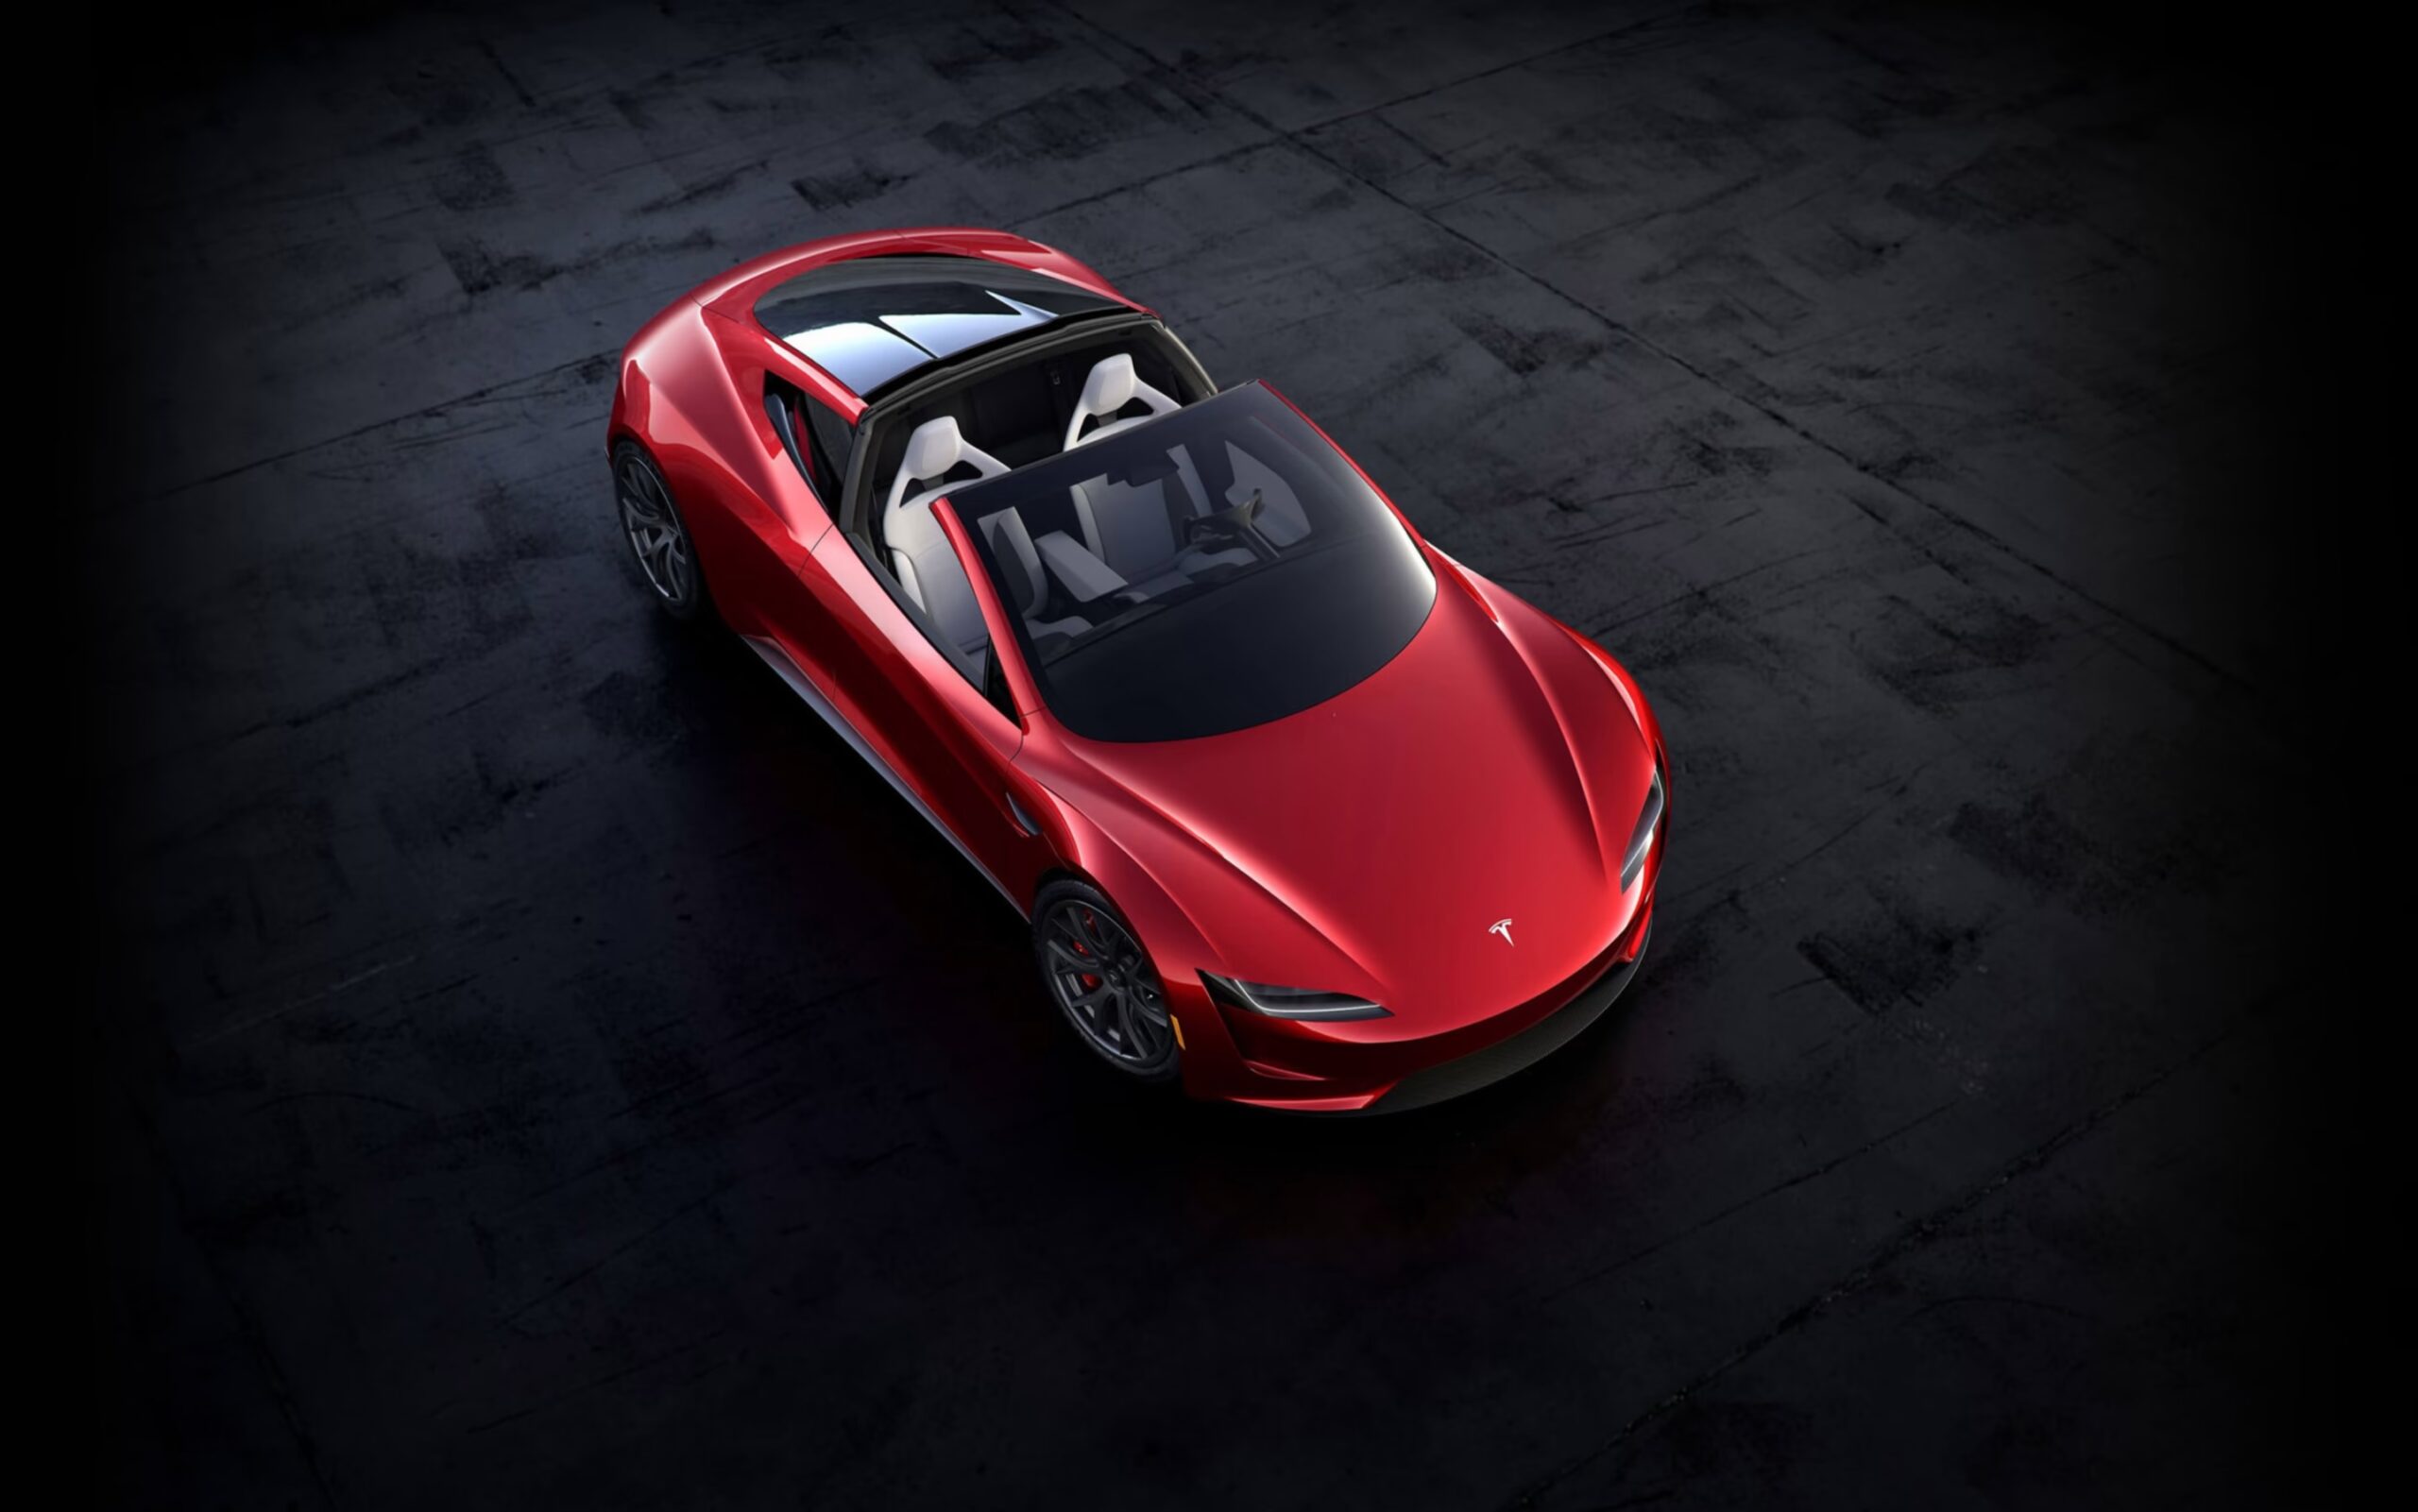 Tesla Roadster - czerwony samochód sportowy marki Tesla z otwartym szklanym dachem zaparkowany na ciemnoszarej, betonowej nawierzchni.